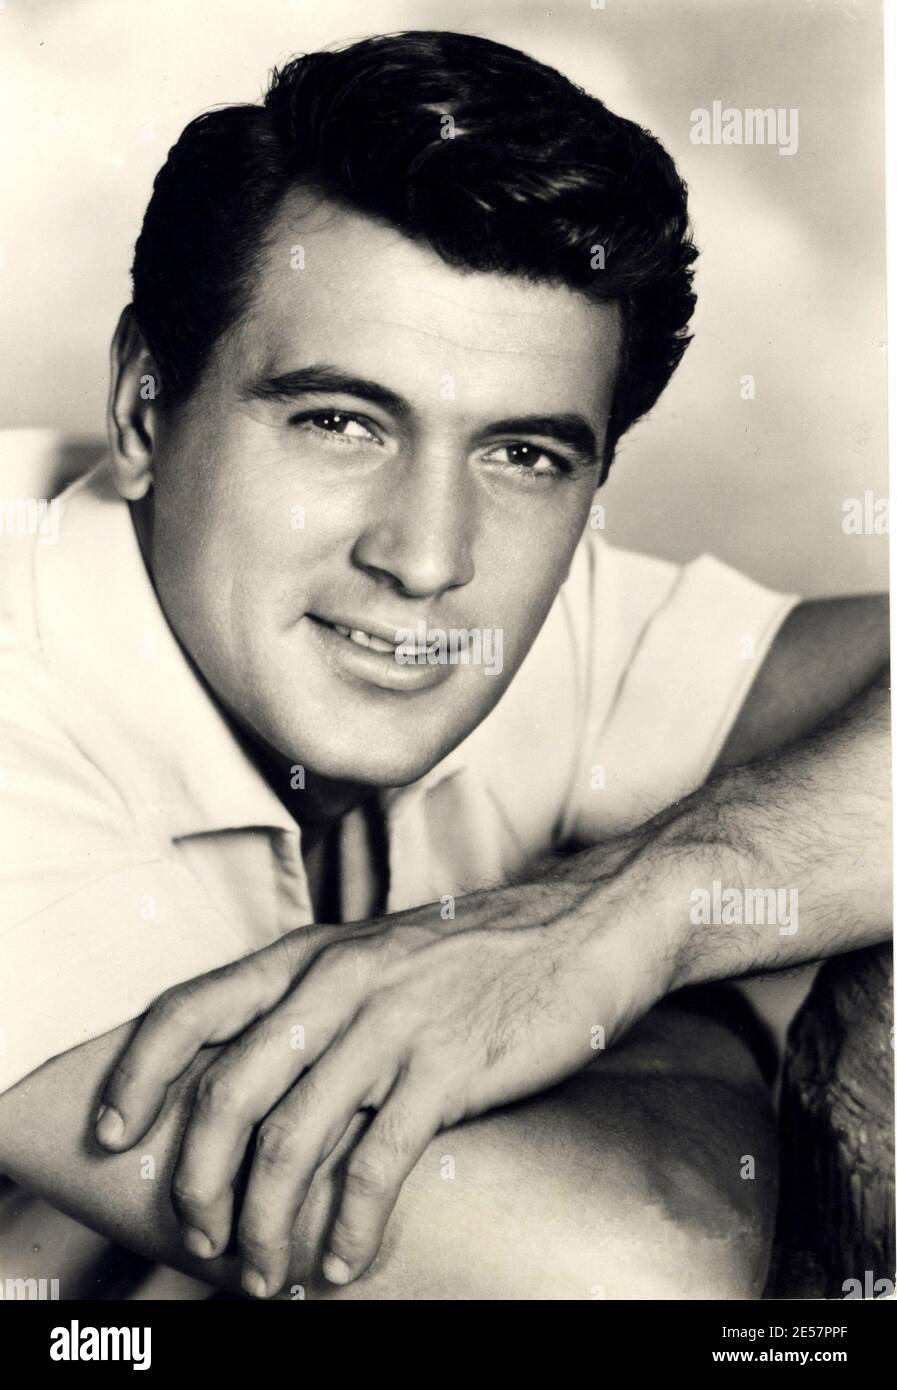 1954 c., USA : l'attore cinematografico ROCK HUDSON ( 1925 - 1985 ) - CINEMA - FILM - autore - ritratto - ritratto - hunk - sorriso - sorriso mano - morto per AIDS - A.I.D.S. - HIV desease - beefcake - camicia bianca - camicia bianca ---- Archivio GBB Foto Stock